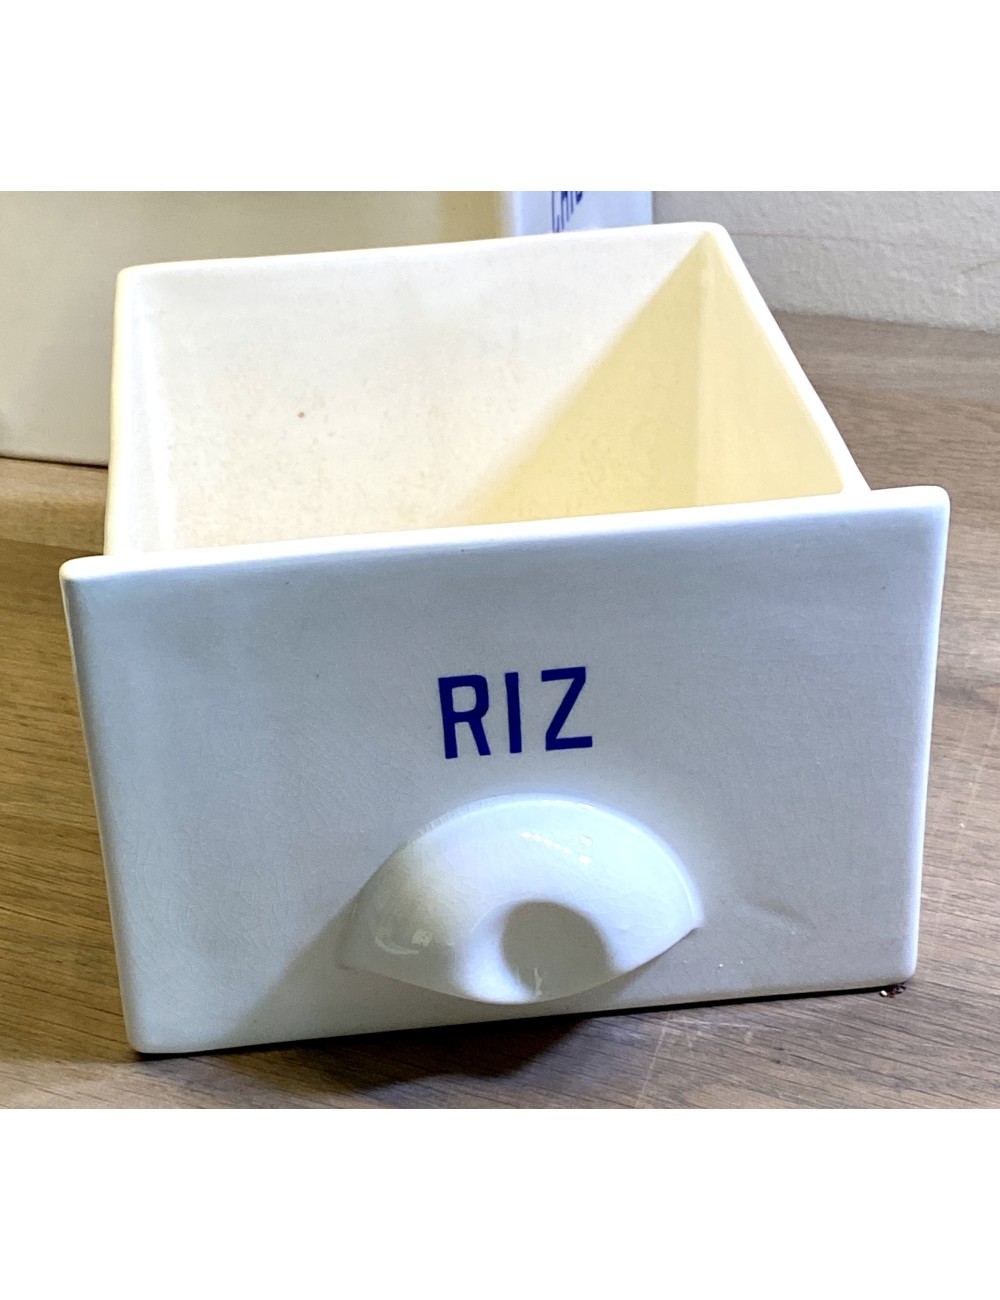 Voorraadbak voor in een keukenrek / kruidenrek - Roesler (Rodach) - opschrift in blauw RIZ